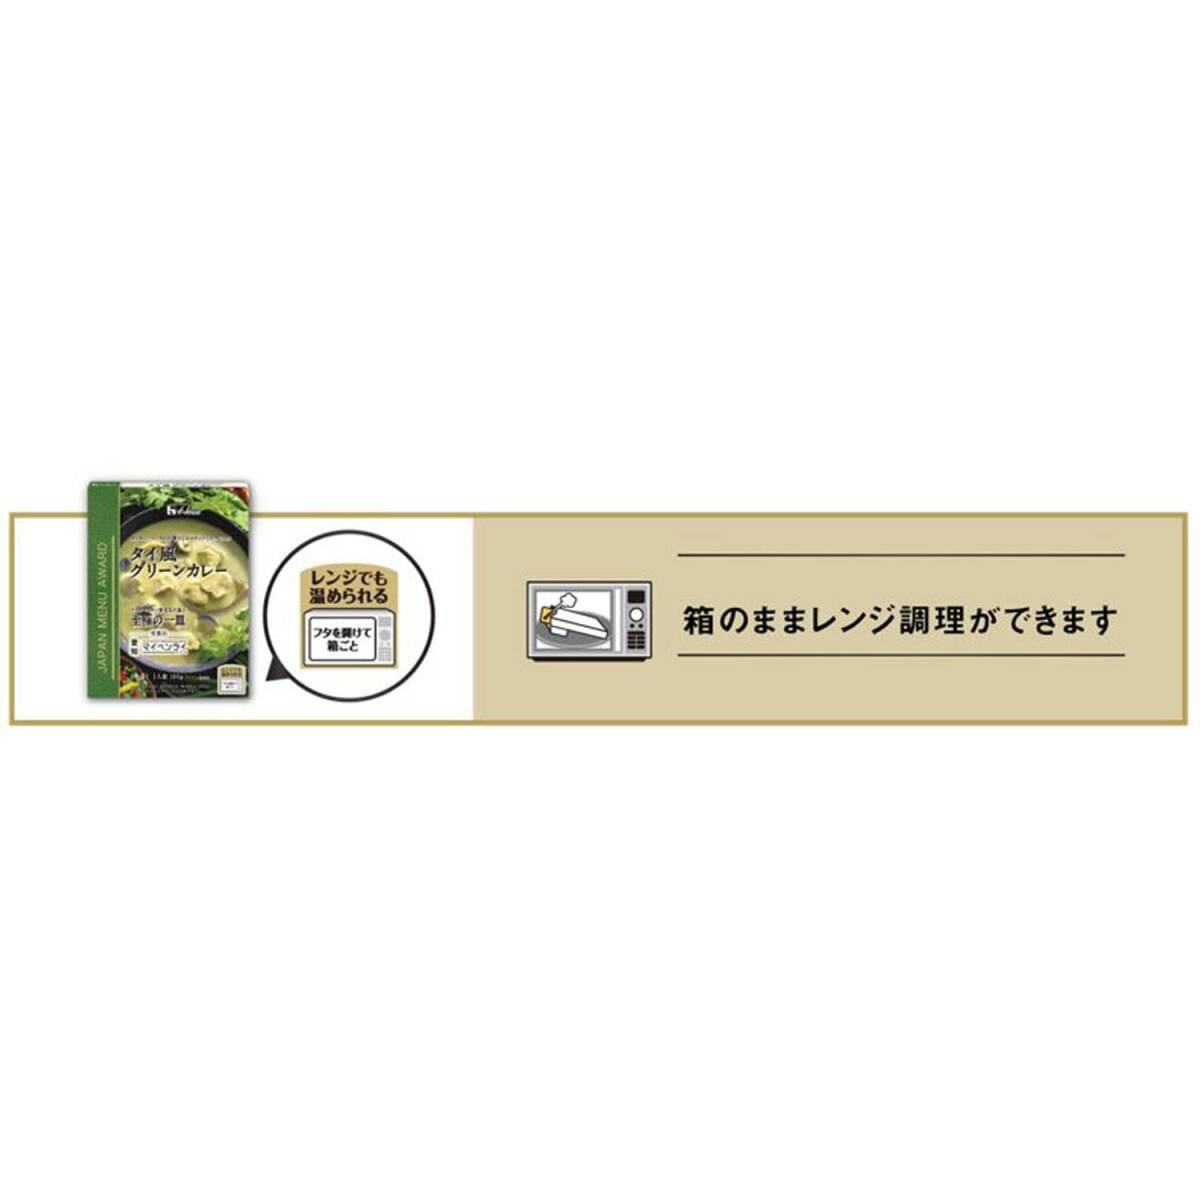 ハウス JAPAN MENU AWARD タイ風グリーンカレー 180g×5個 [レンジ化対応・レンジで簡単調理可能]_画像6